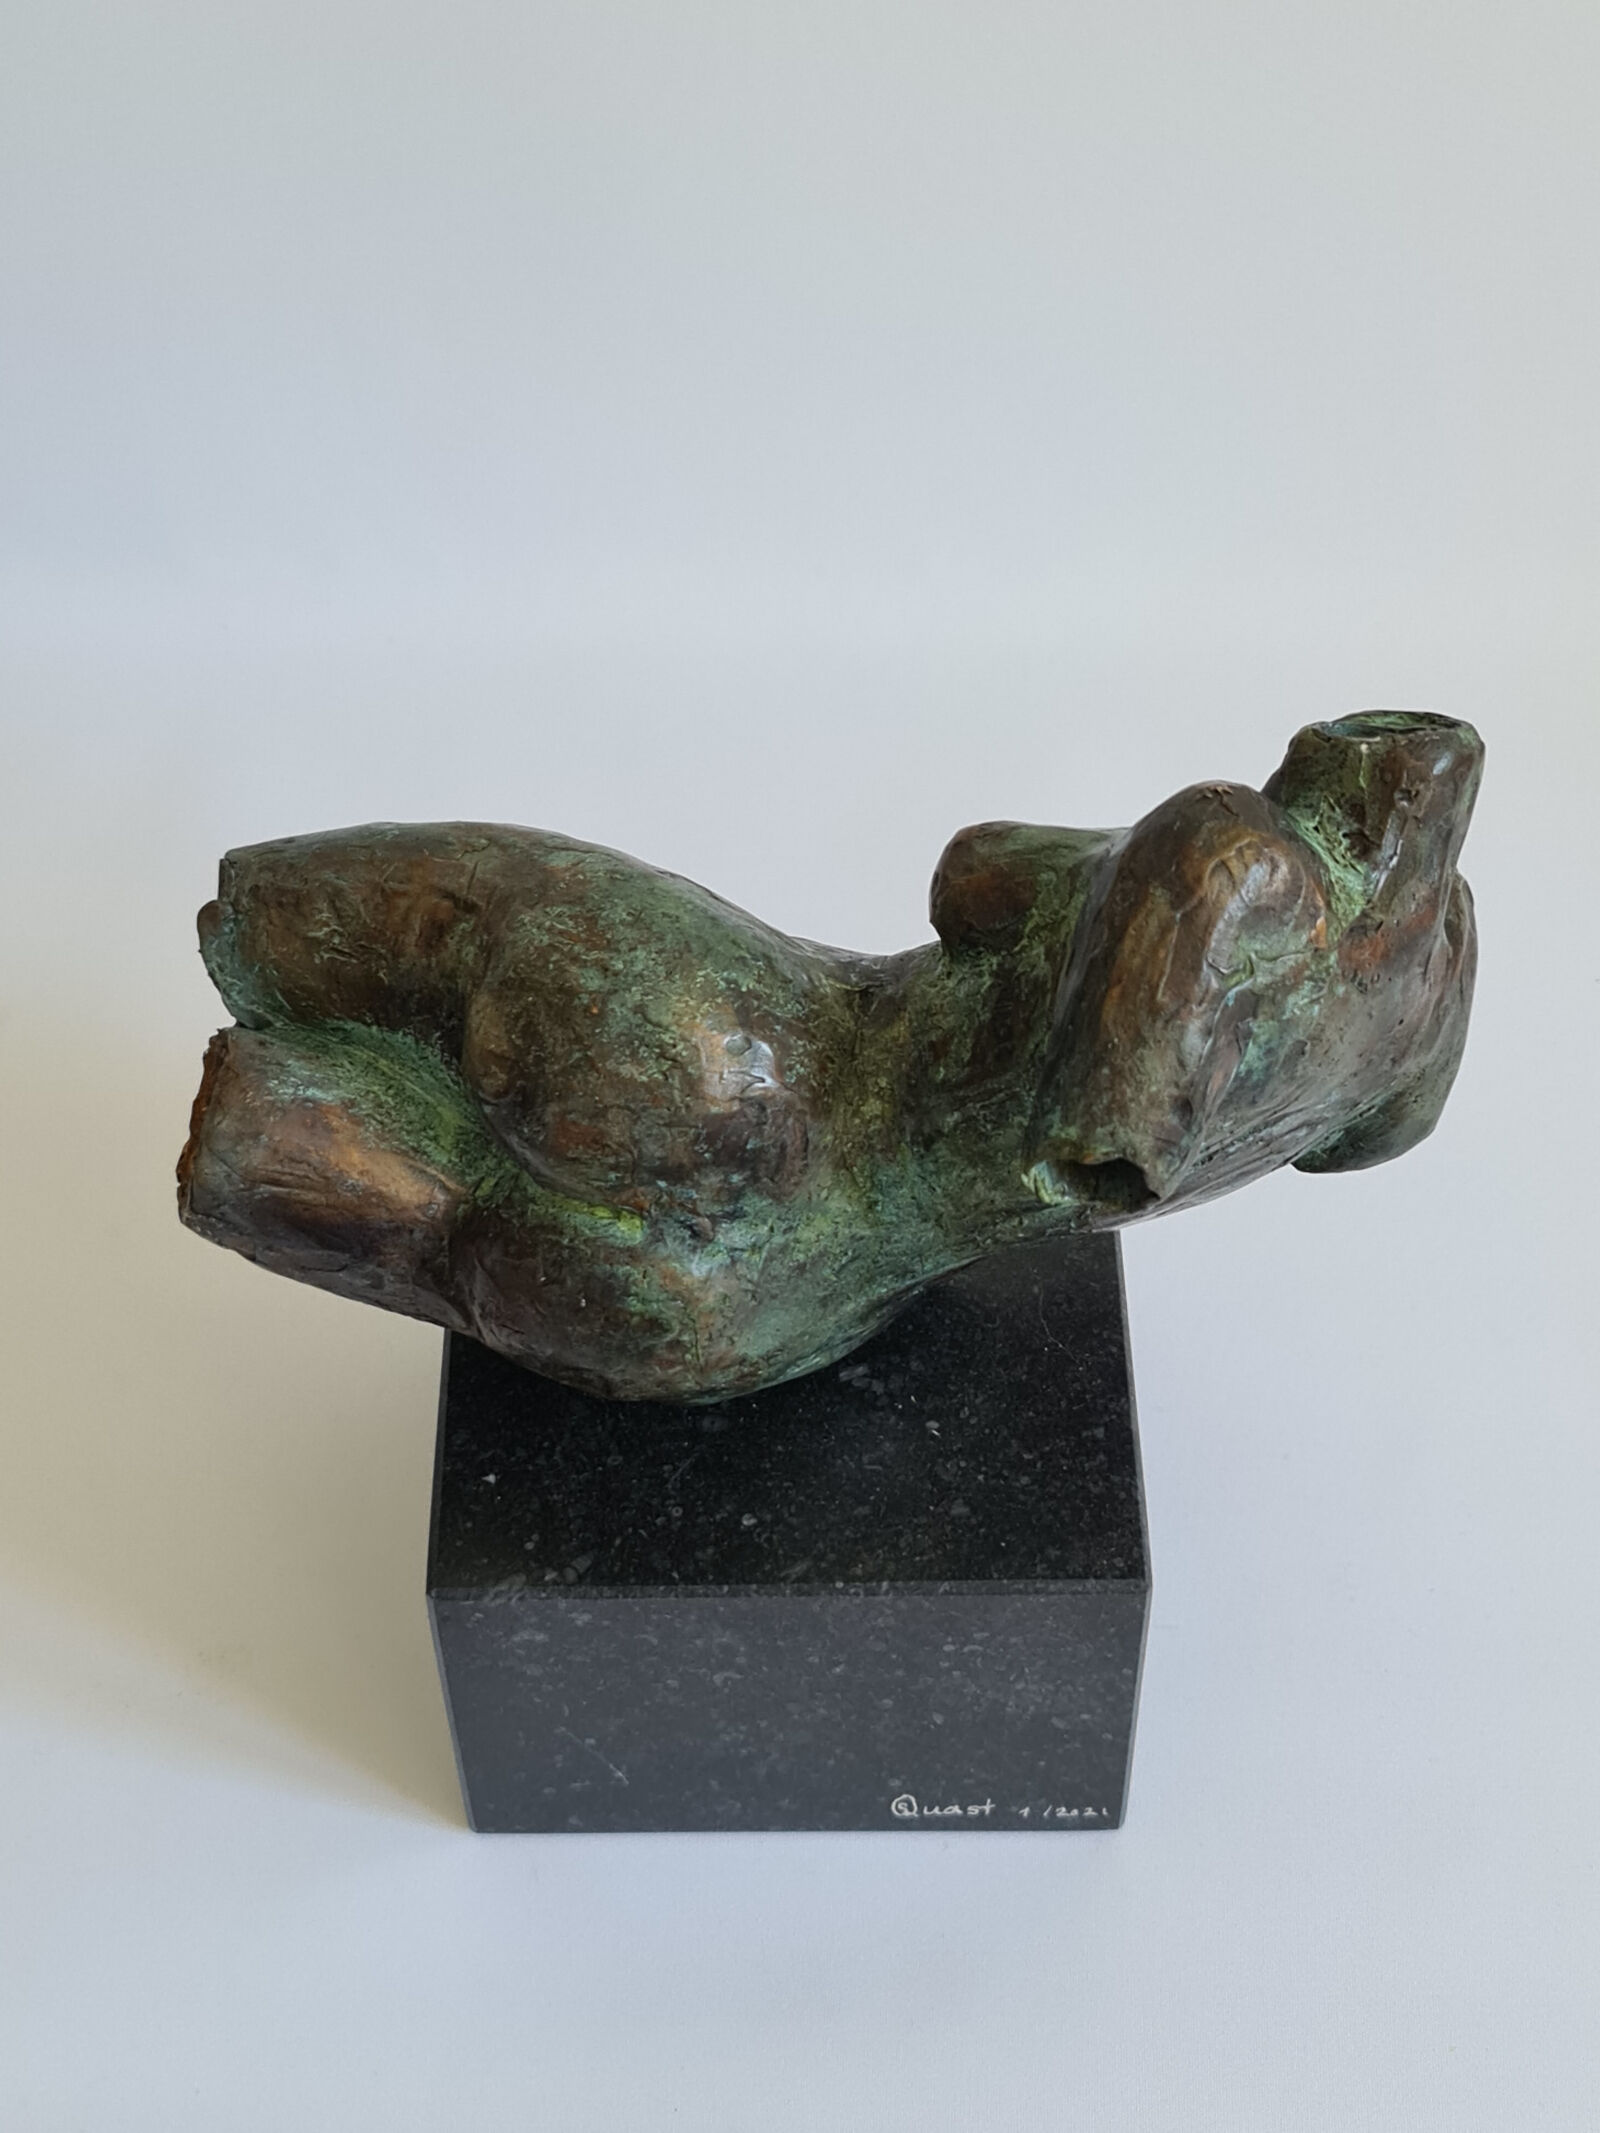 Sculpture "Lying torso" (2021)